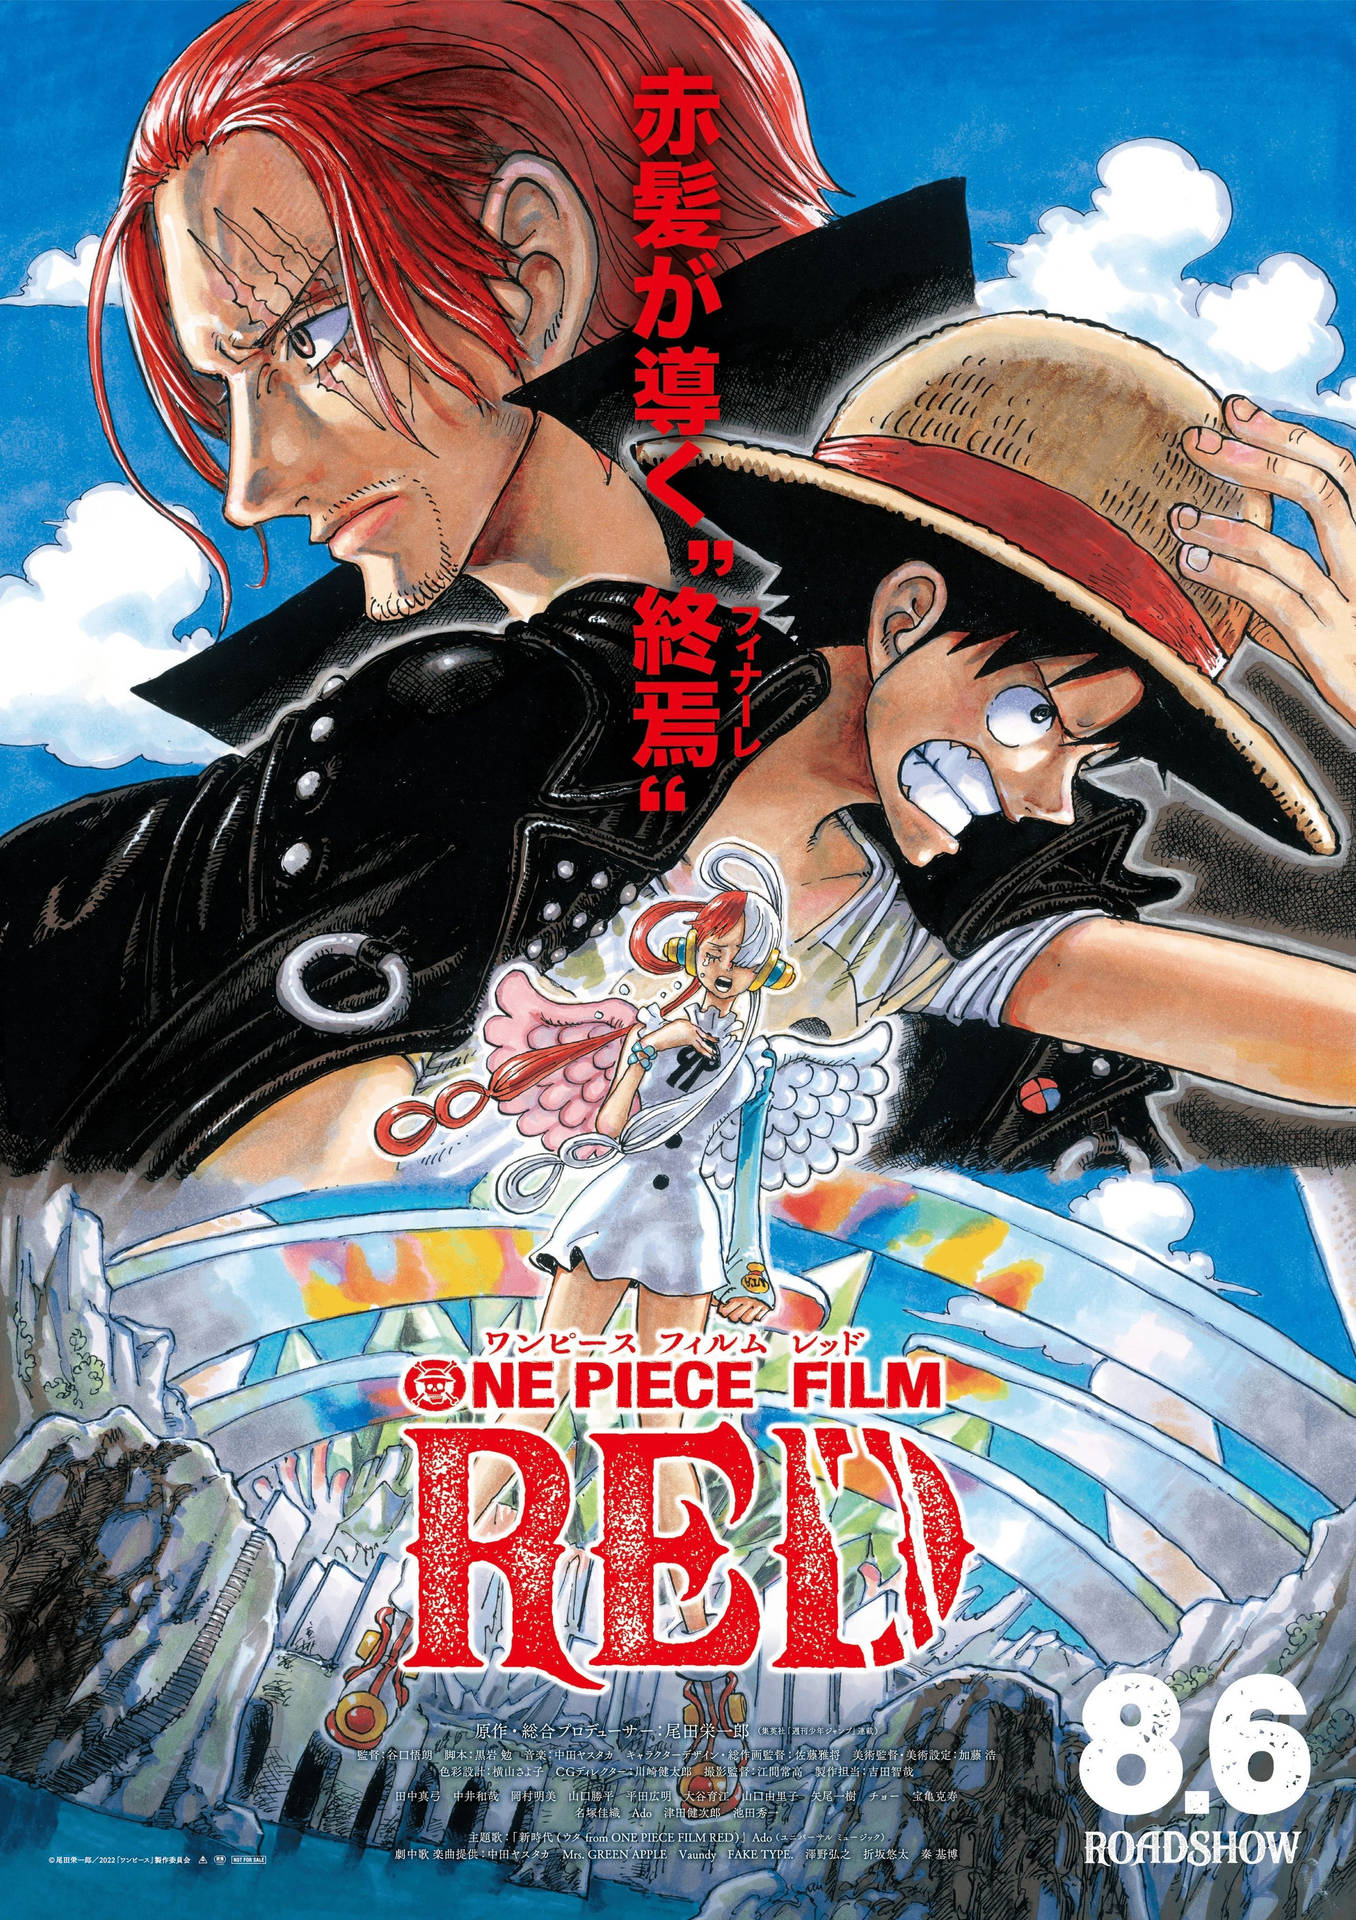 Pôster De Mangá Vermelho One Piece Film Papel de Parede